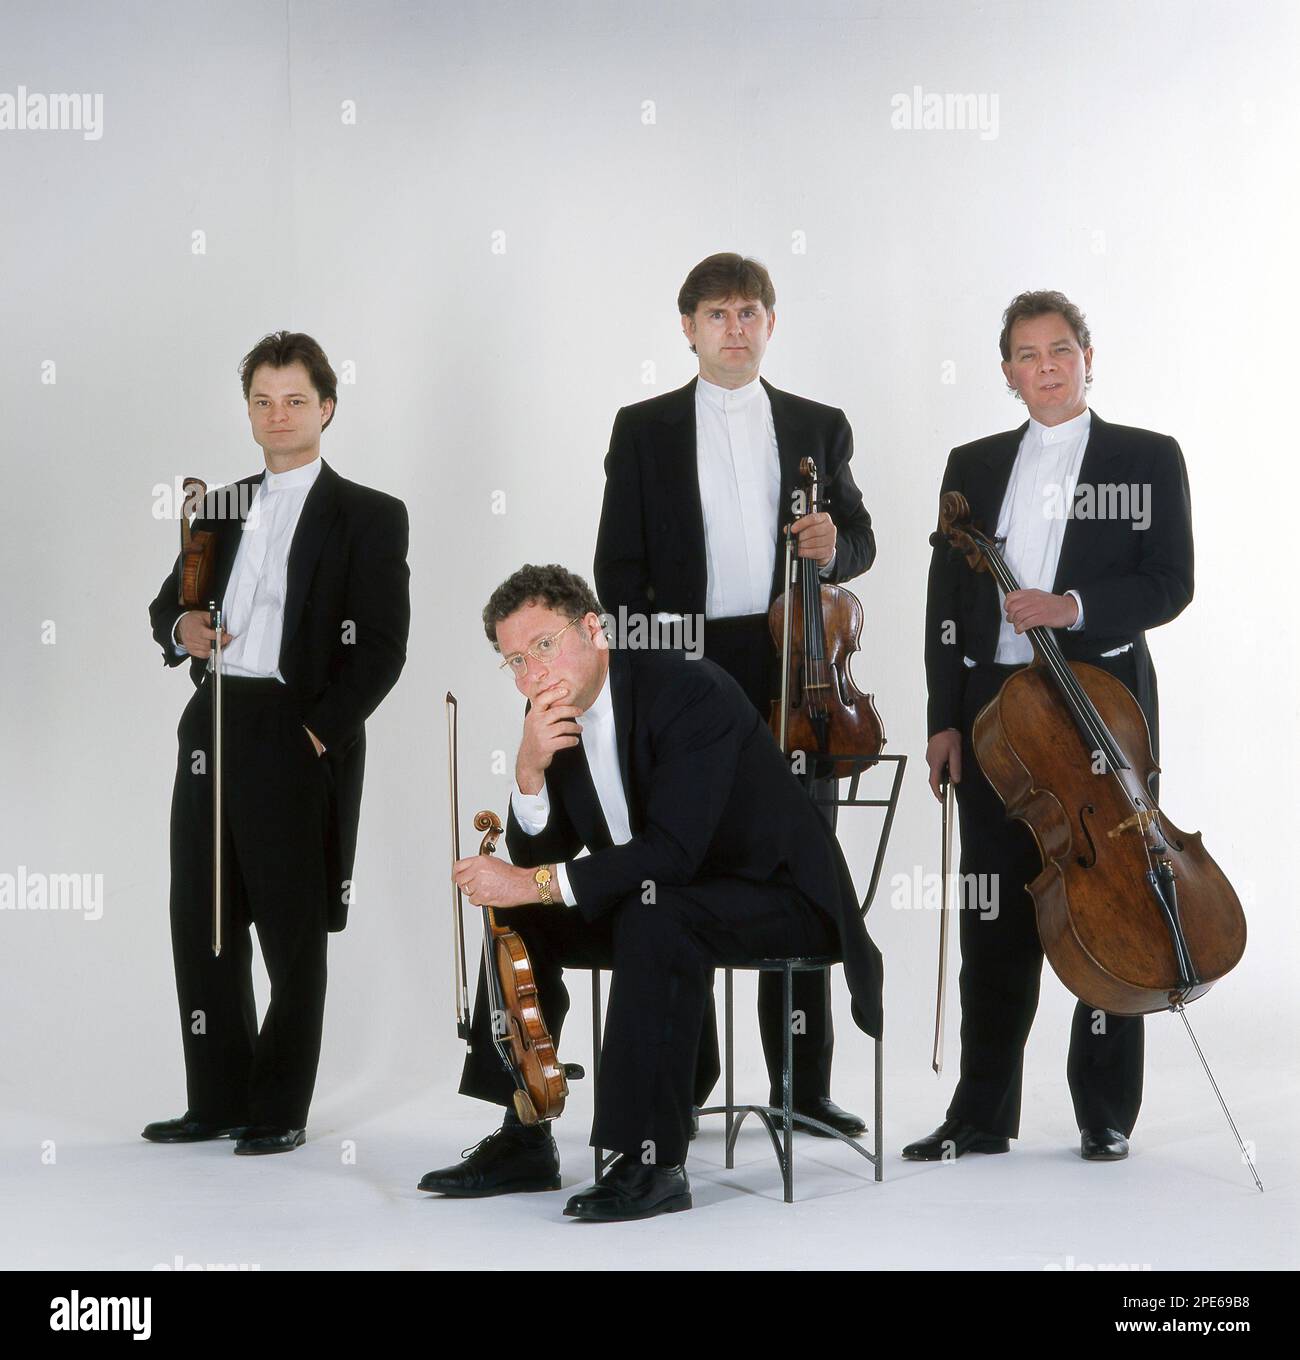 Medici String Quartet Stockfoto